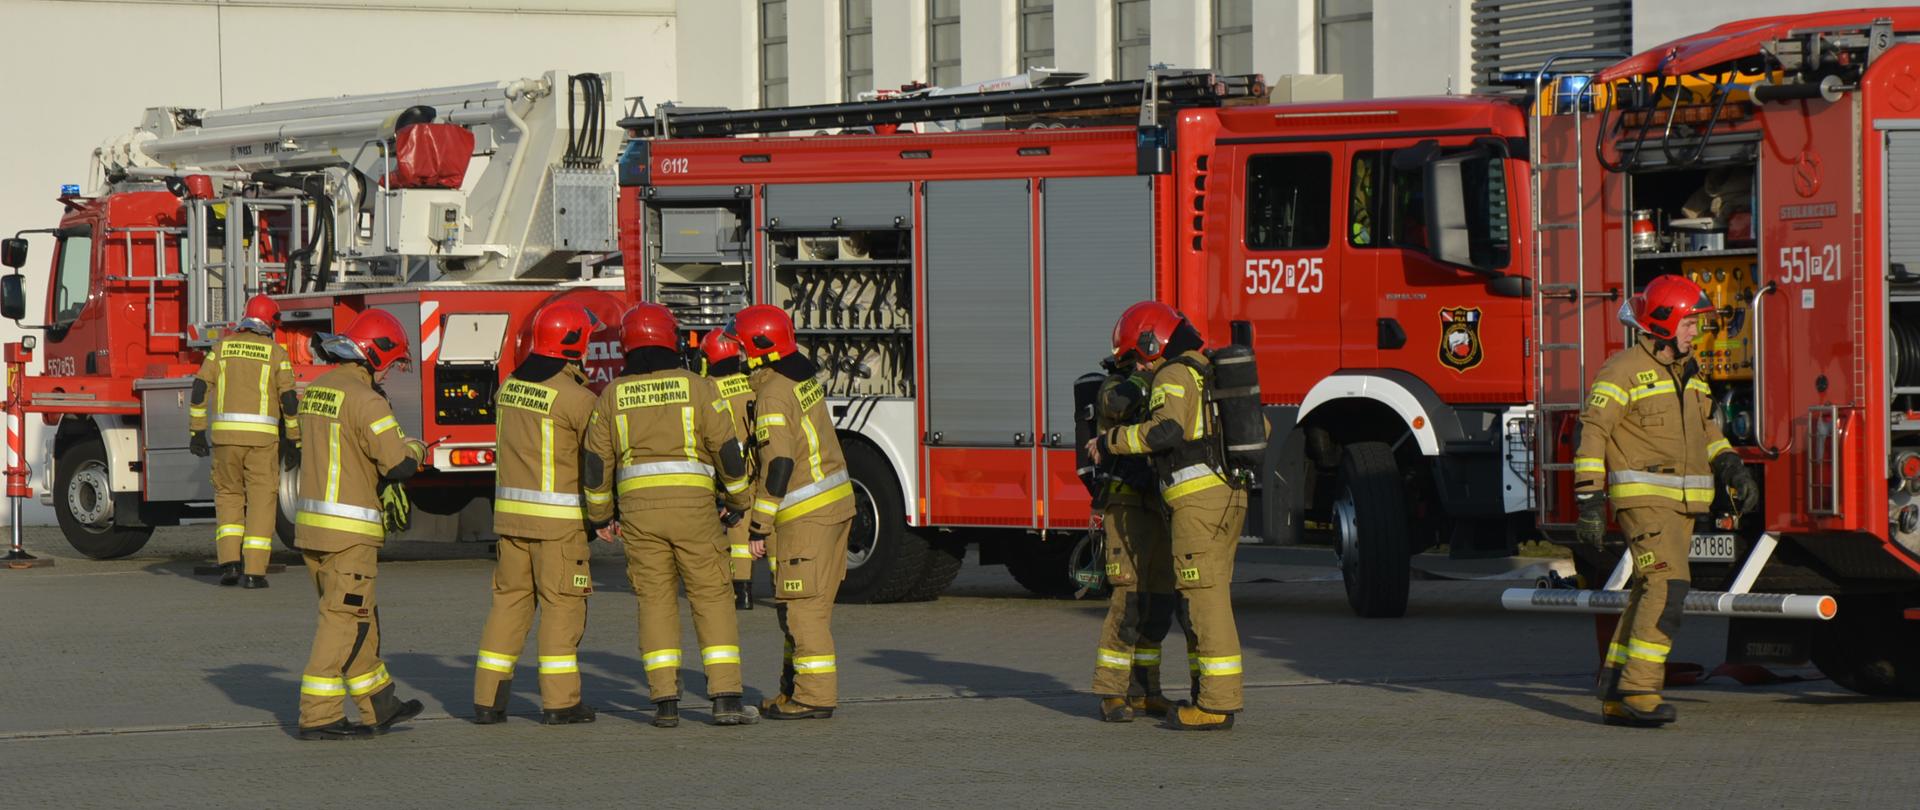 Na zdjęciu widać dwa samochody gaśnicze, drabinę mechaniczną oraz strażaków przygotowujących się do ćwiczeń.